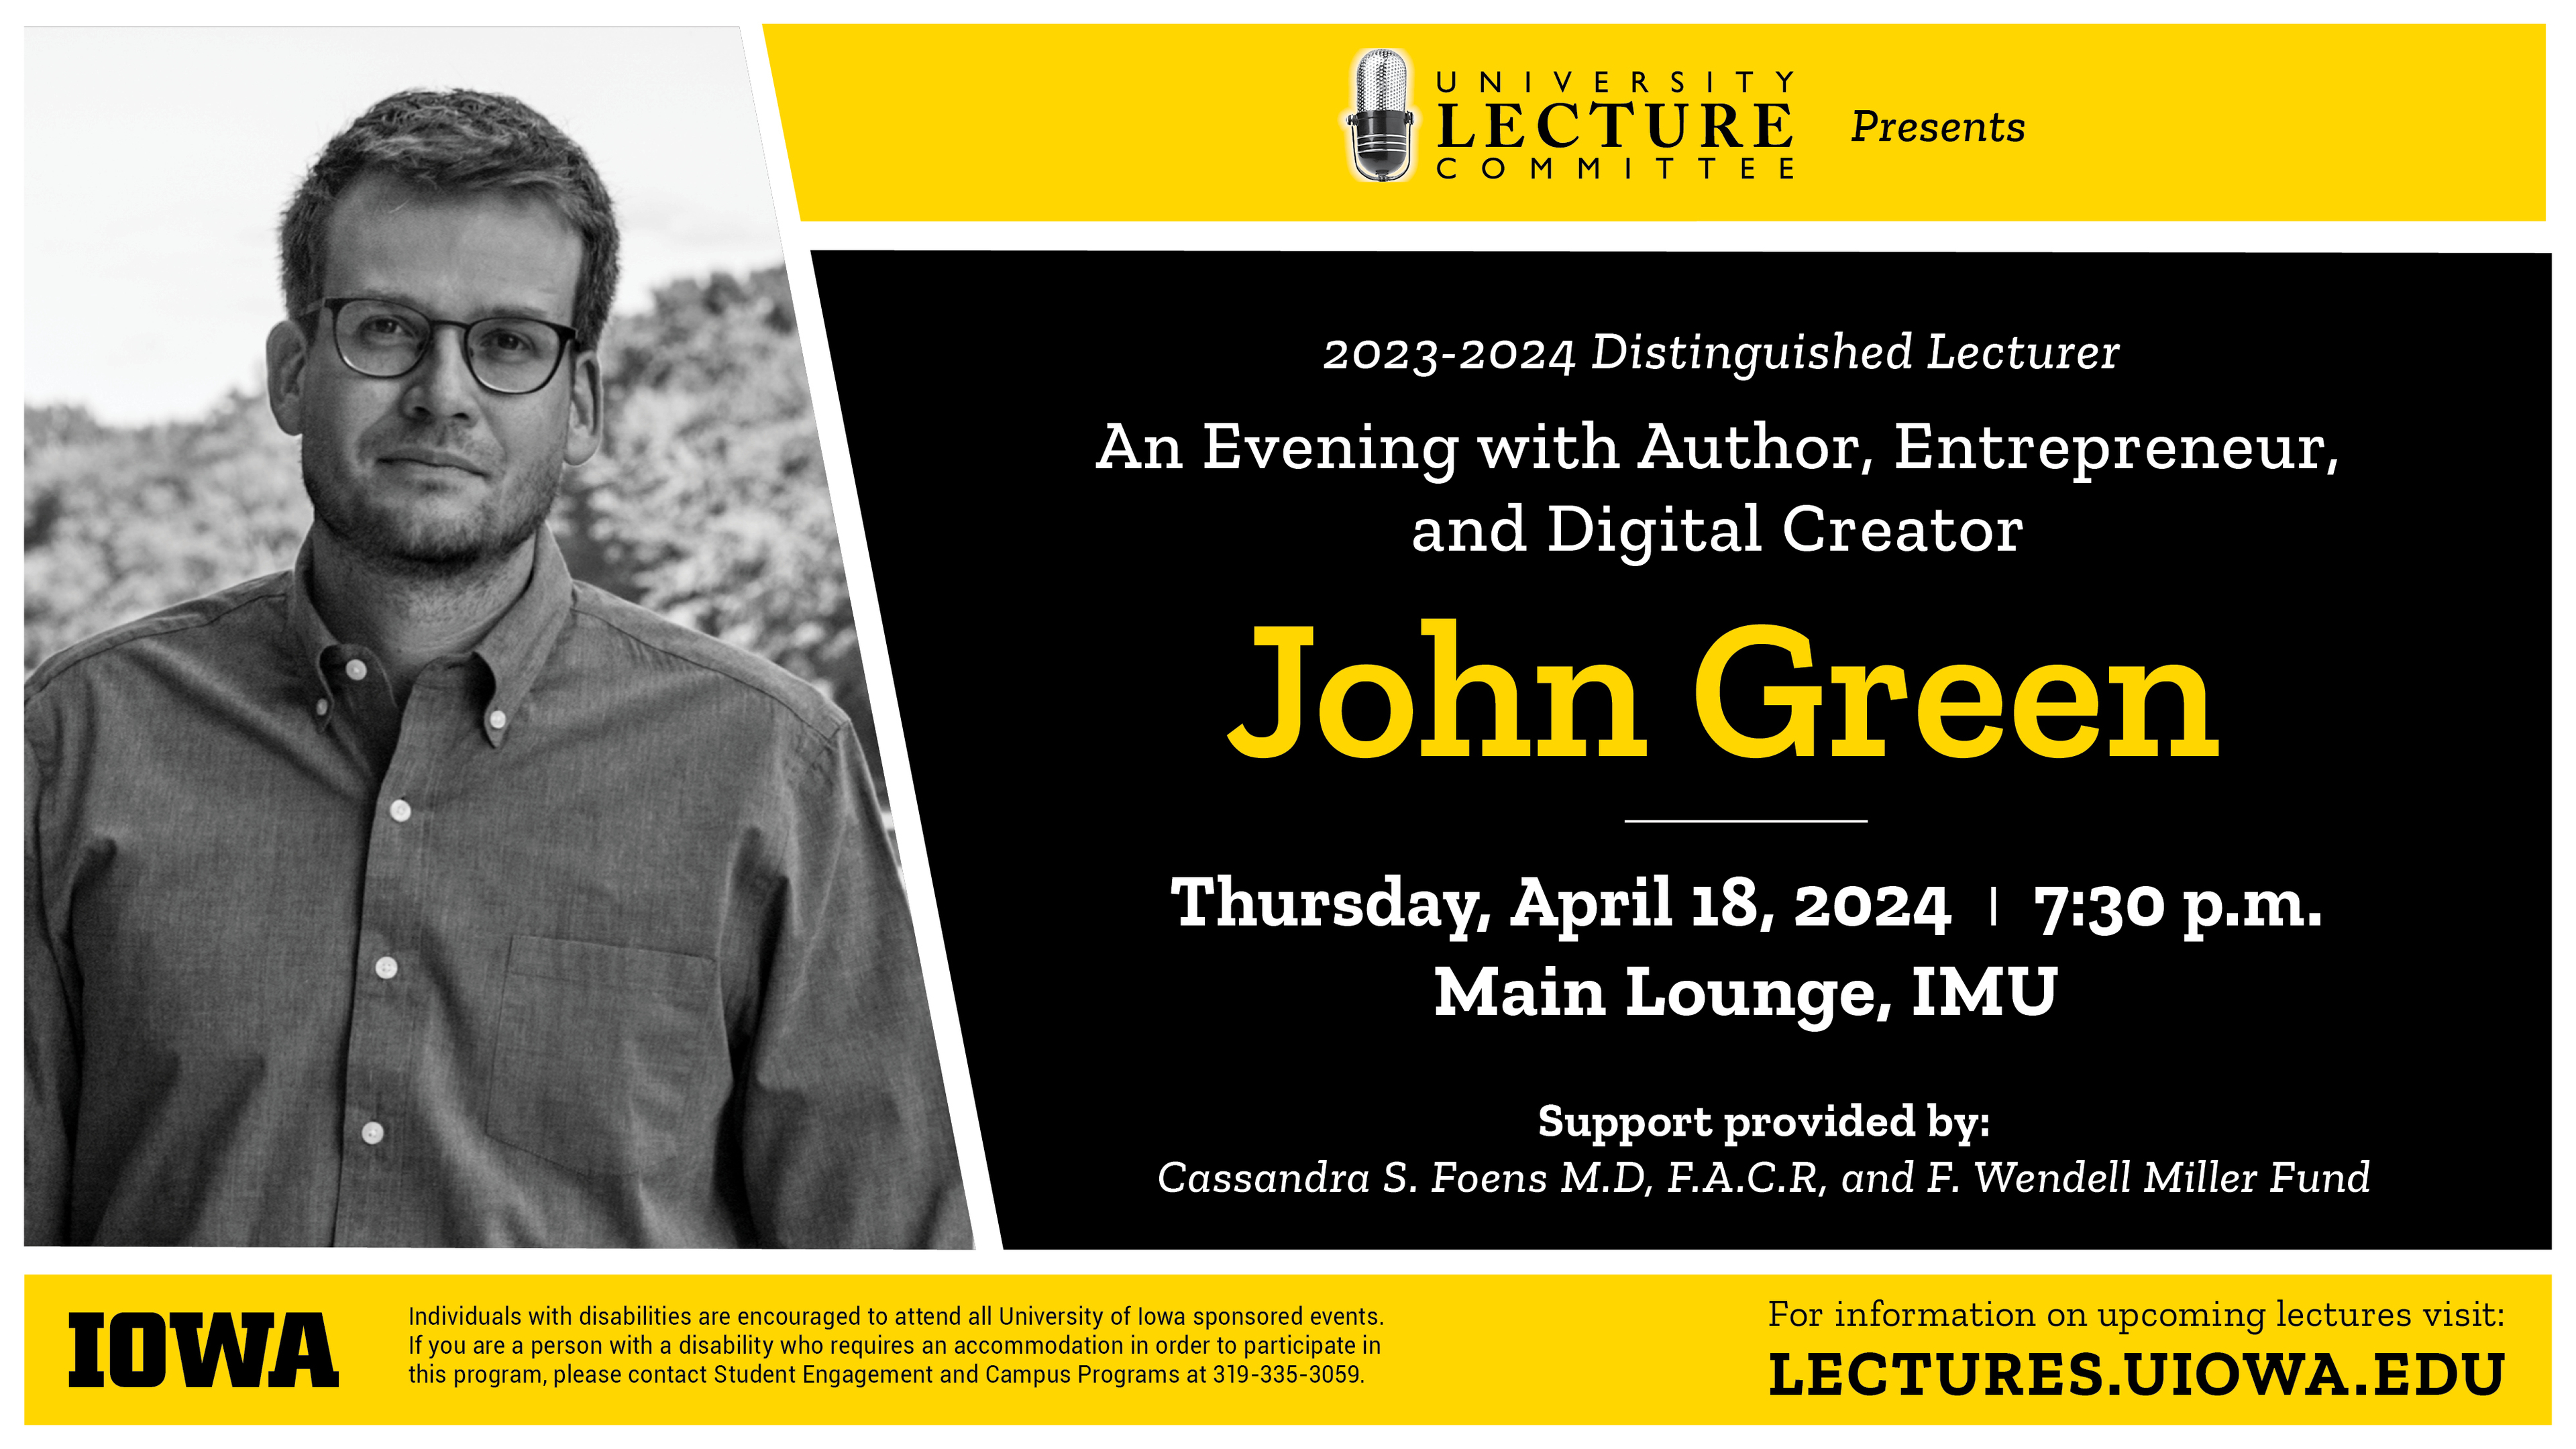 John Green Thursday April 18, 2024 7:30 p.m. Main Lounge IMU